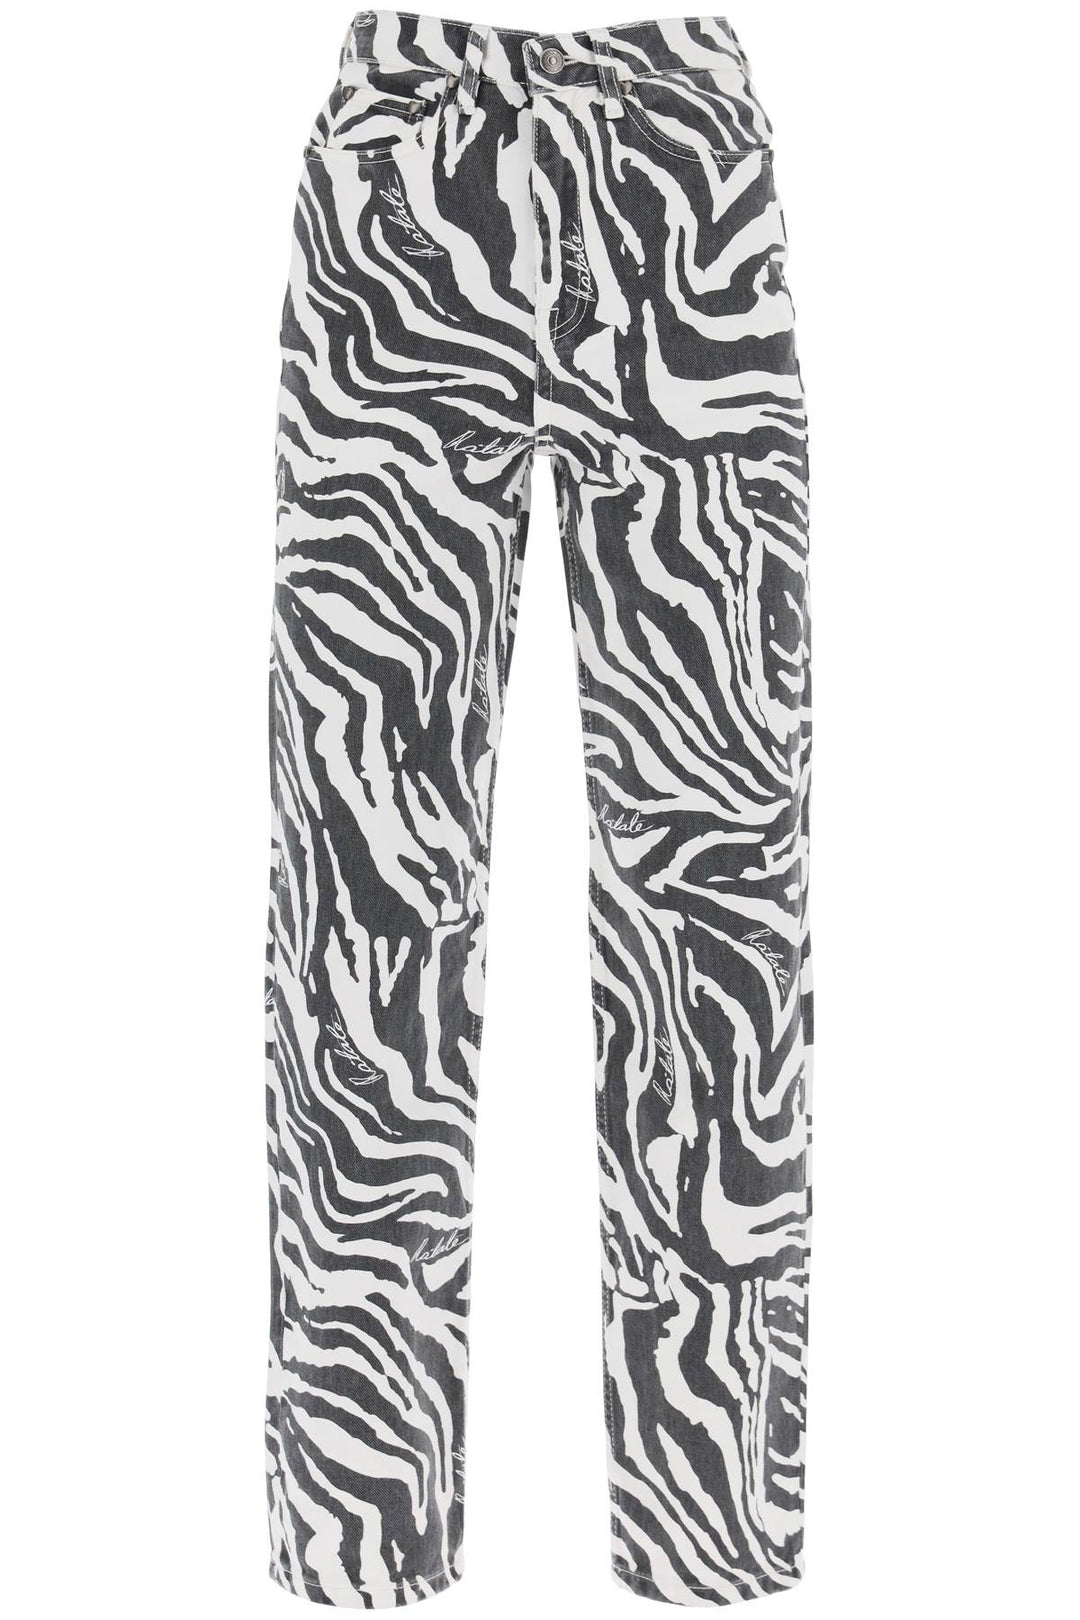 Jeans Dritti Stampa Zebra